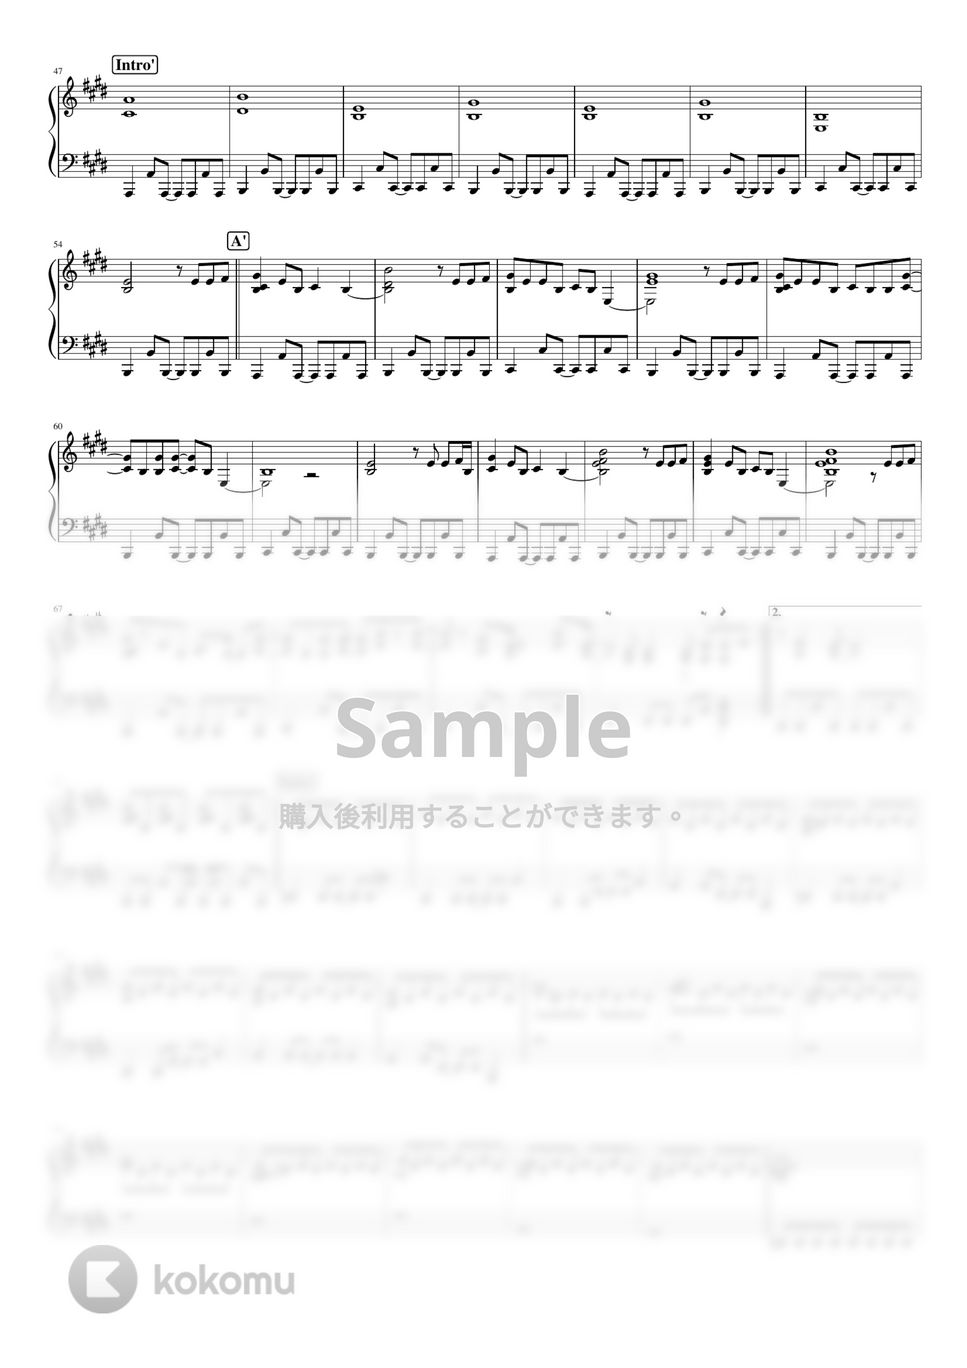 羊文学 - 1999 by pianomikan